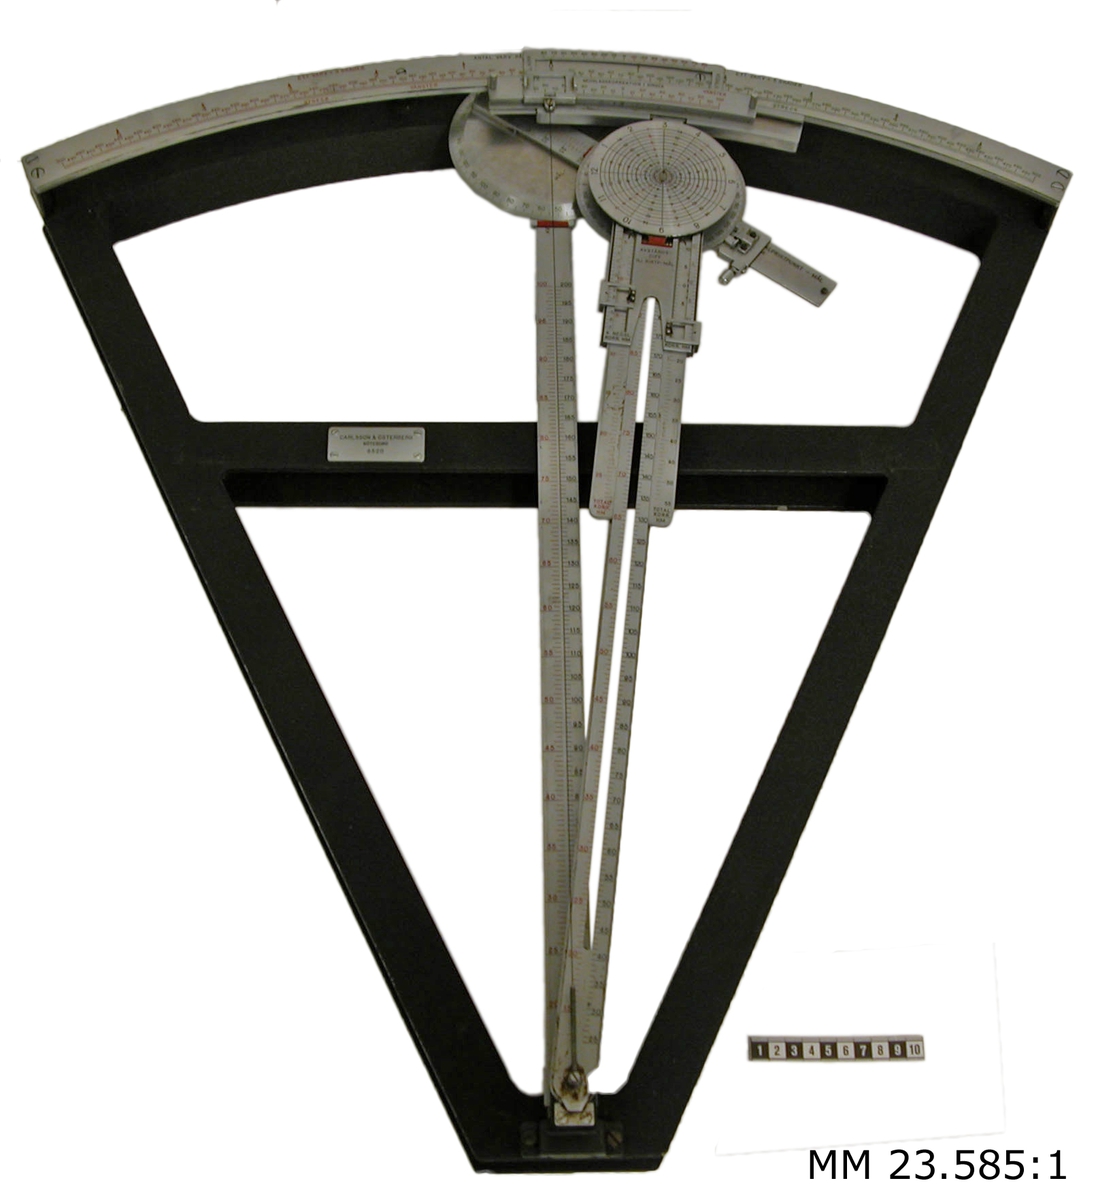 Räkneinstrument m/45 består av en triangelformad stomme. Hela instrumentet är av metall. På den bågformade kortsidan är en korrektionsbåge fäst, denna är graderad i 5 grader på vänster (rödmärkt) respektive höger (grönmärkt) sida. Från den triangelformade stommens spets utgår två armar: den fasta riktpunktsarmen och den vridbara målarmen. På riktpunktsarmen går en löpare på vilken målvinkelskivan är vridbart fäst. Löparens ena ände utgör index för skalan på riktpunktsarmen. På målarmen löper en glidhylsa på vilken korrektionsskivan är vridbart fäst. Glidhylsans ena ände tjänstgör som index för skalan på målarmen. Korrektionsskivan består av två plattor, den ena uppgraderad i timmar och liggande ovanför målarmen, den andra uppgraderad i grader och liggande ovanför målarmen. De båda plattorna är fast förenade med en axel som går genom en långsgående slits i målarmen. På översidan av målvinkelskivan och fast förenad med denna sitter bäringsarmen. Denna skjuter in i en gejd under korrektionsskivans undre platta. Plattan fastlåses vid gejden genom en fjäderbelastad kolv. Gejdens ena ände utgör index för skalan på bäringsarmen. Gejden kan låsas fast till bäringsarmen med en skruv. Till målarmens glidhylsa är en tudelad linjal fäst, avståndskorrektionslinjalen, som löper på ömse sidor om målarmen. Kring korrektionslinjalen glider en löpare, differenslöparen, med index för skalan på målarmen. På differenslöparen glider två löpare för minnesinställning av nedslagskorrektion i avstånd. På riktpunktsarmen glider en enkel löpare, avsedd att användas i stället för differenslöparen, i de fall avståndet till hjälpriktpunkten är större än till målet. Målarmens fria ände är invid sidkorrektionsbågen utformad som en gejd. I gejden styrs sidkorrektionslinjalen sommanövreras med två tappar. För nollinställning av sidkorrektionslöparen, som förskjuts med två öron. Vid korrektionslöparen är en tråd fäst, vars ena ände är fäst vid målarmens fasta ände. Sidkorrektionslinjalen har en båge som bildar fönster för index och skala på sidkorrektionsbågen, medgivande avläsning av den totala sidkorrektionen. Sidkorrektionen kan avläsas dels på linjalens båge mot index på korrektionsbågen, dels på korrektionsbågen mot ett index på linjalen.